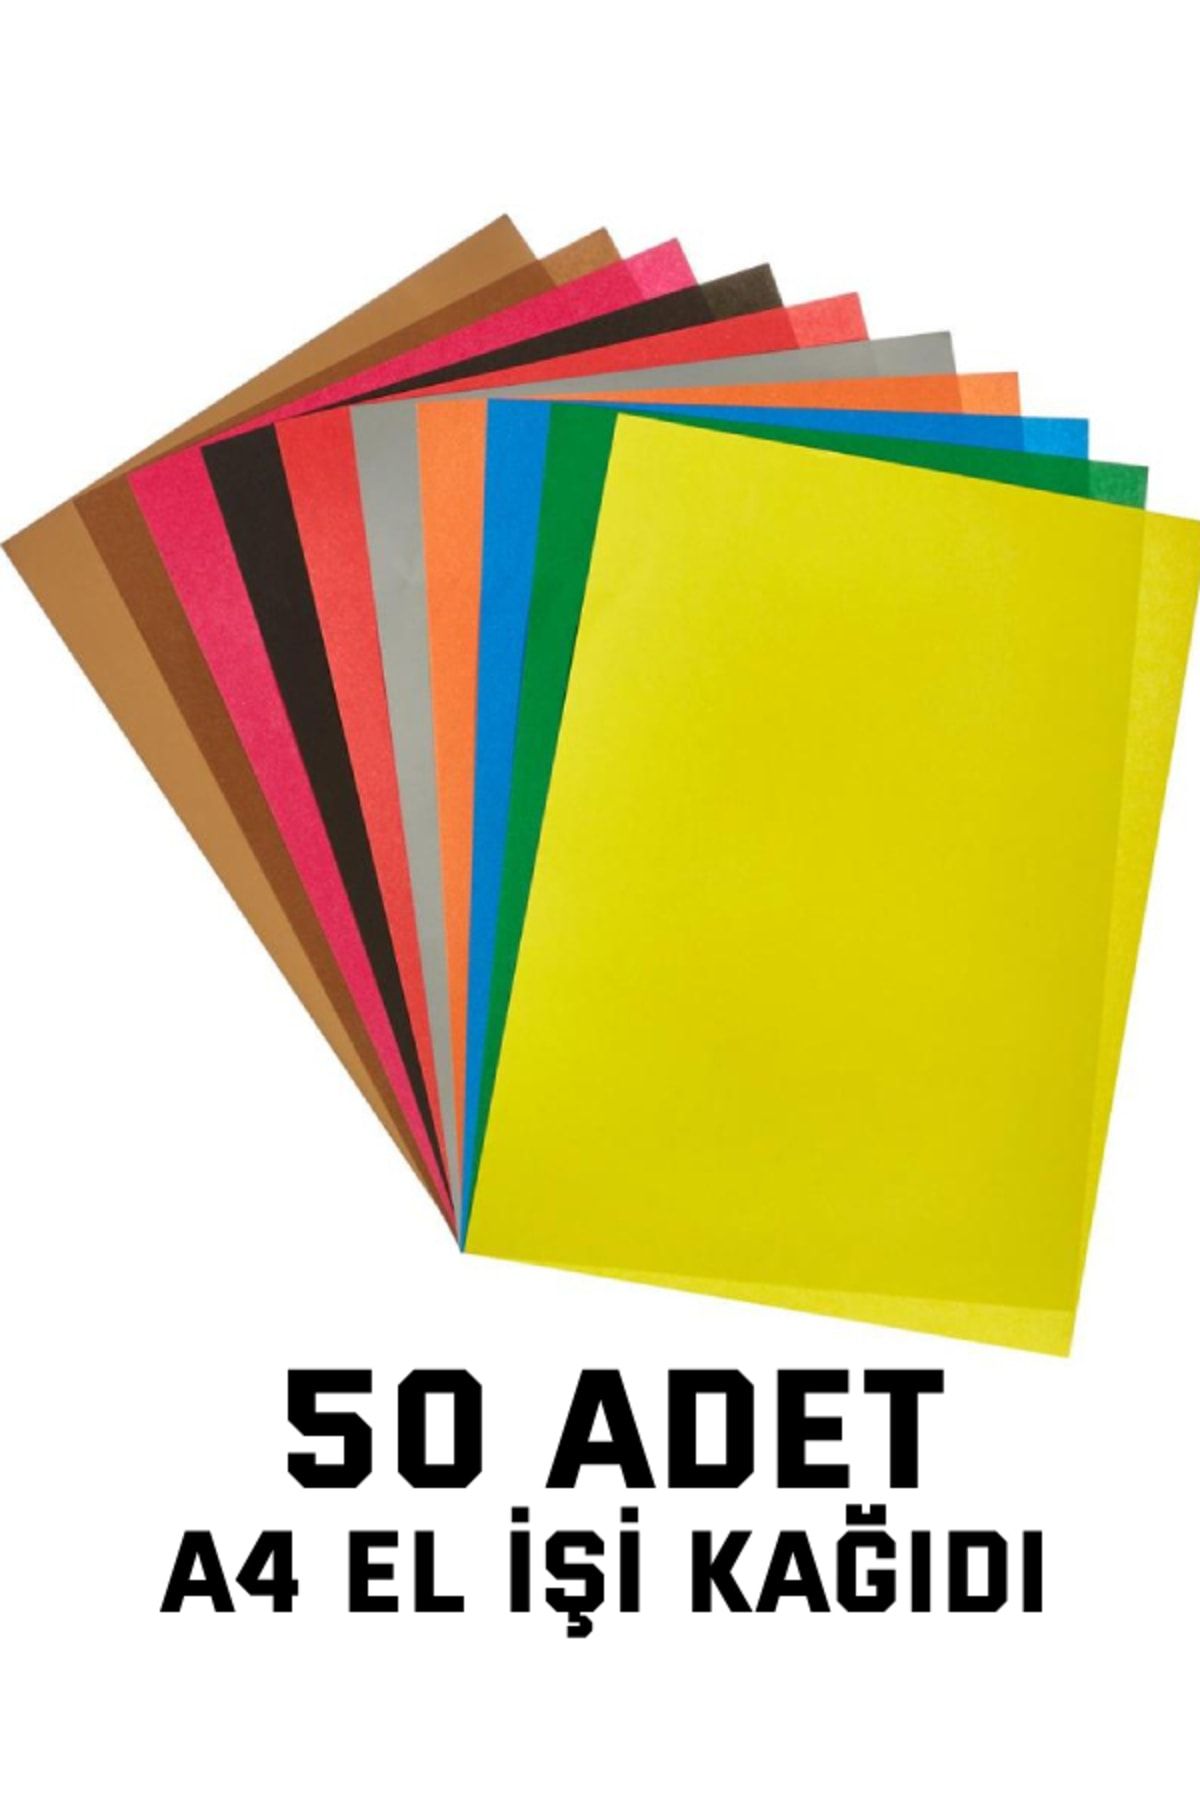 nistabolje 50 Adet A4 Elişi Kağıdı Karışık Renk